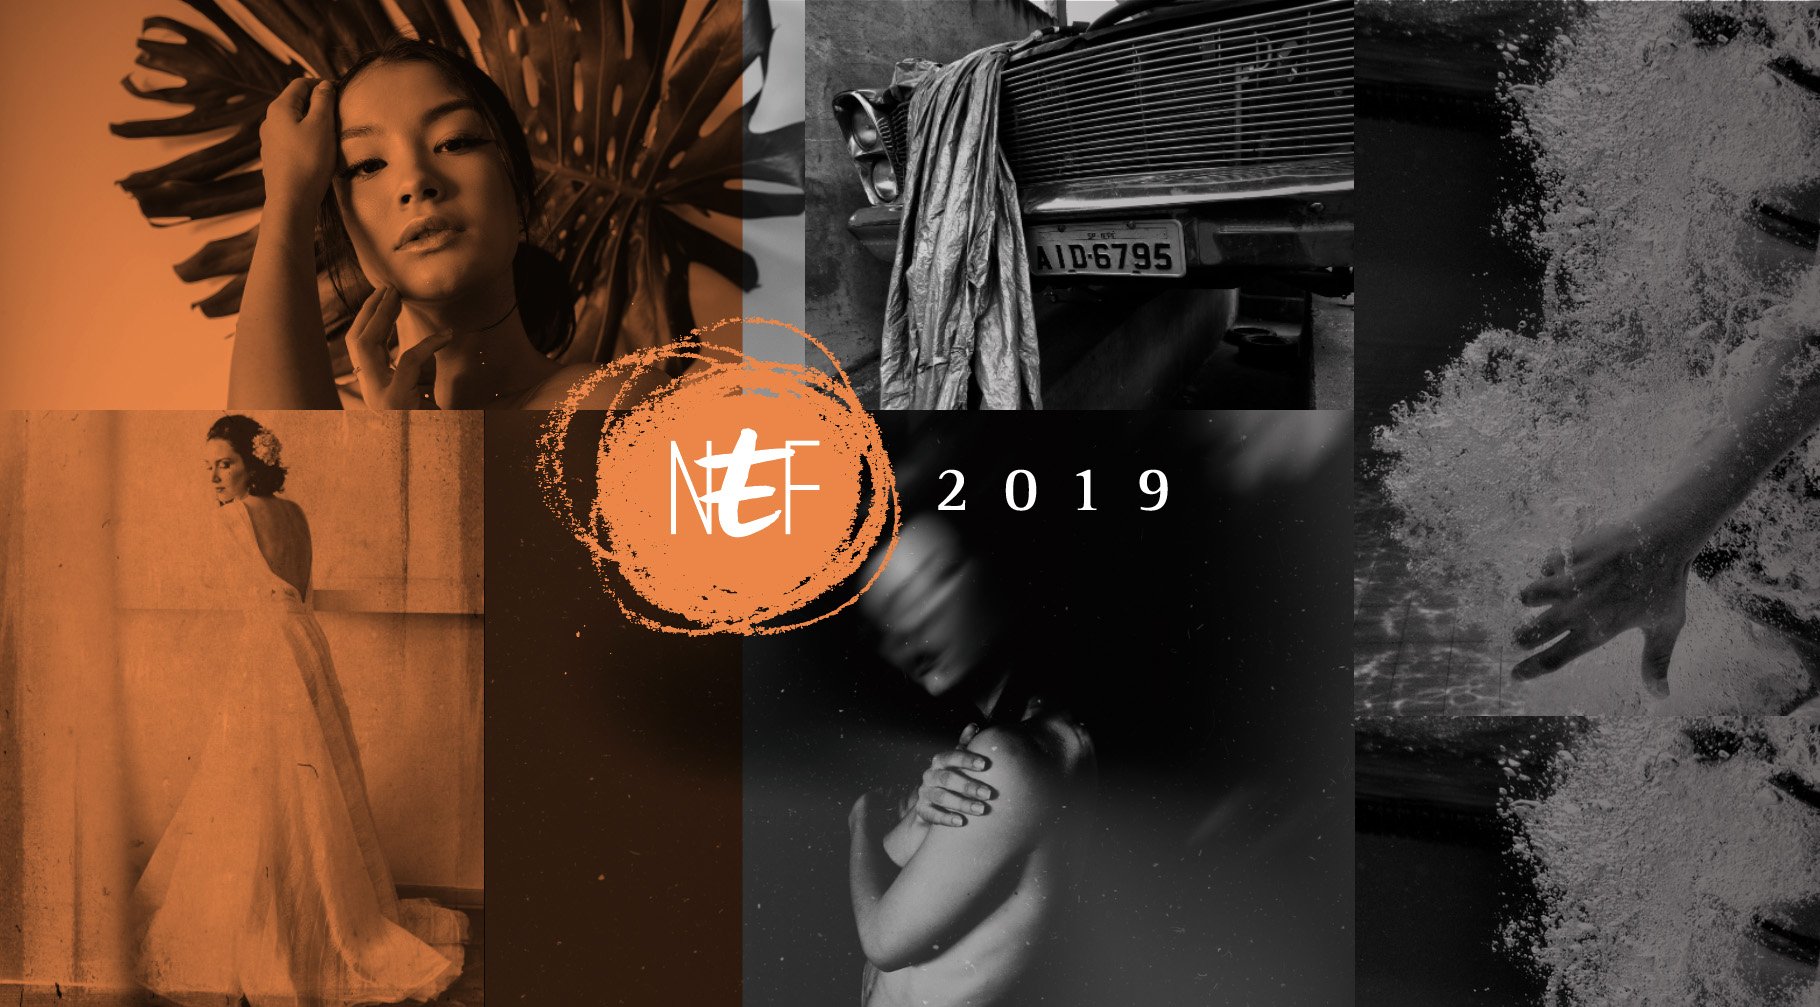 NEF - Núcleo de Estudos em Fotografia 2019